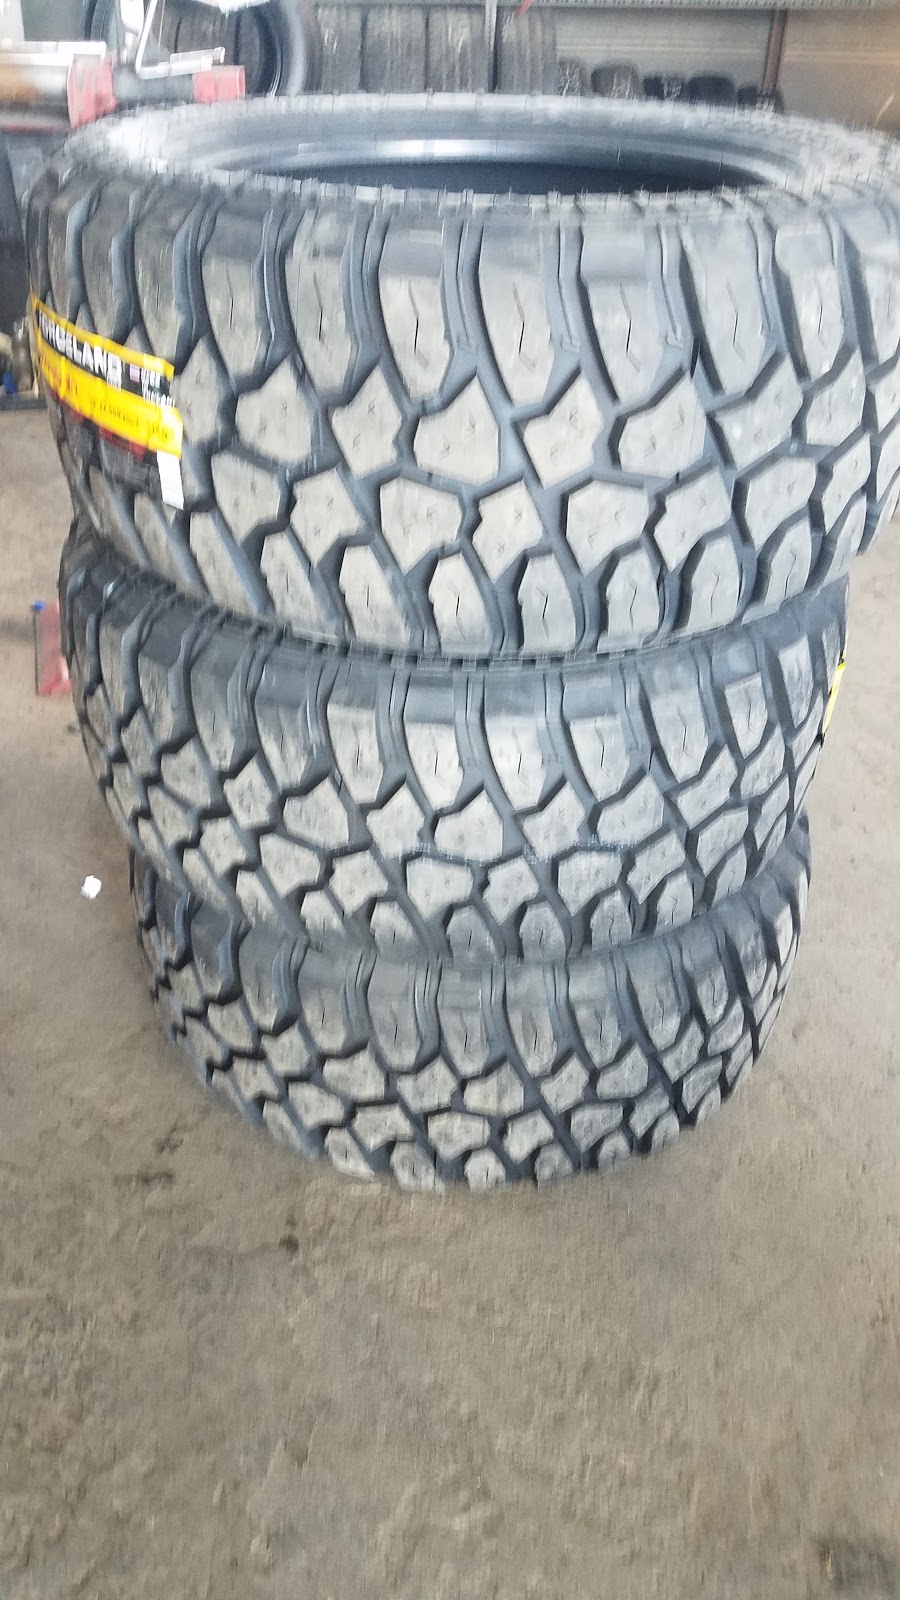 El Ganso Tires & Repair | 8408 Alameda Ave, El Paso, TX 79907 | Phone: (915) 740-3395